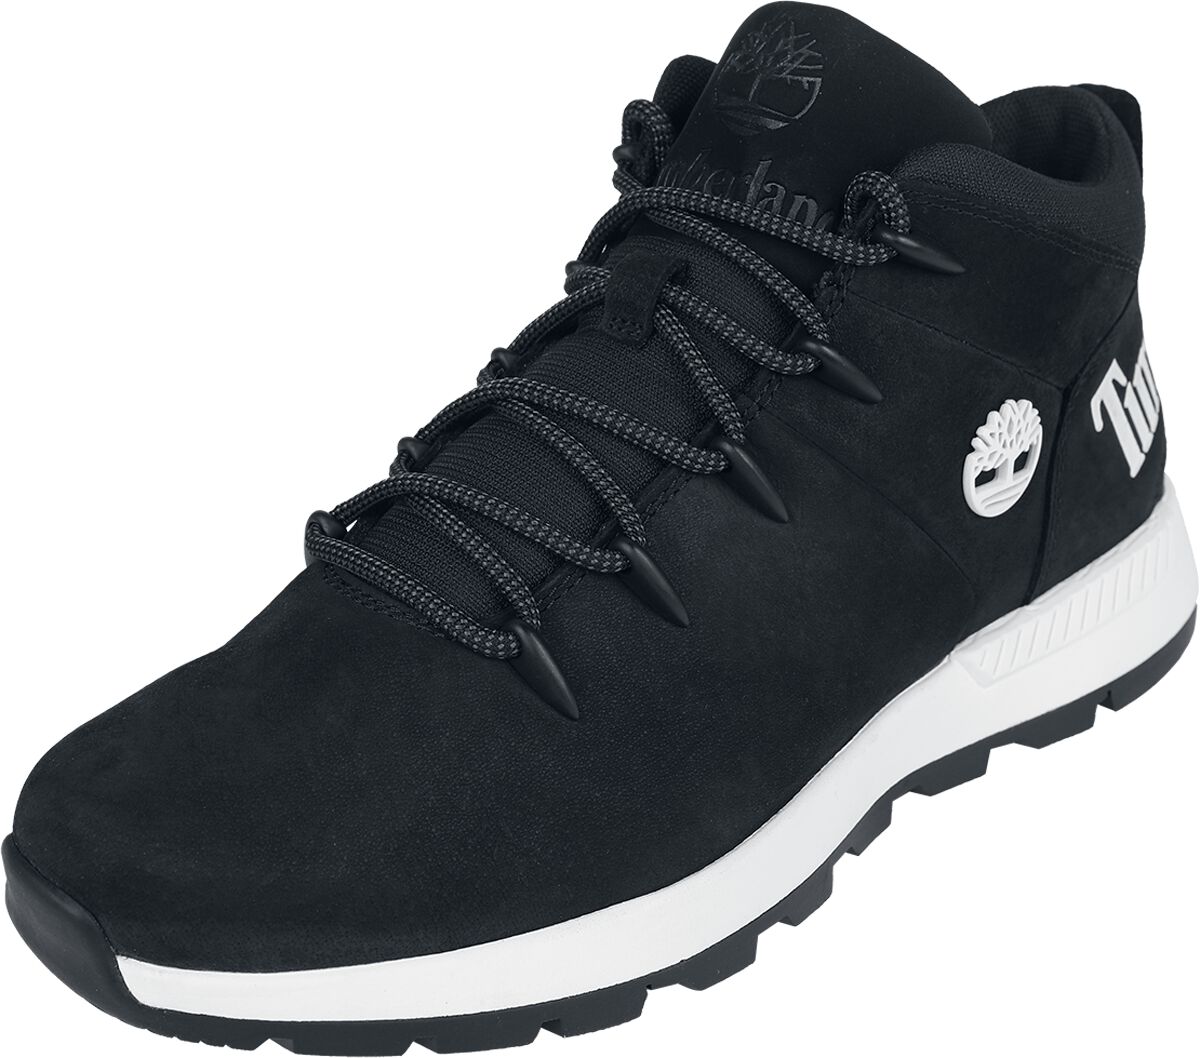 Timberland Sneaker - Sprint Trekker Mid Lace Up - EU41 bis EU46 - für Männer - Größe EU42 - schwarz